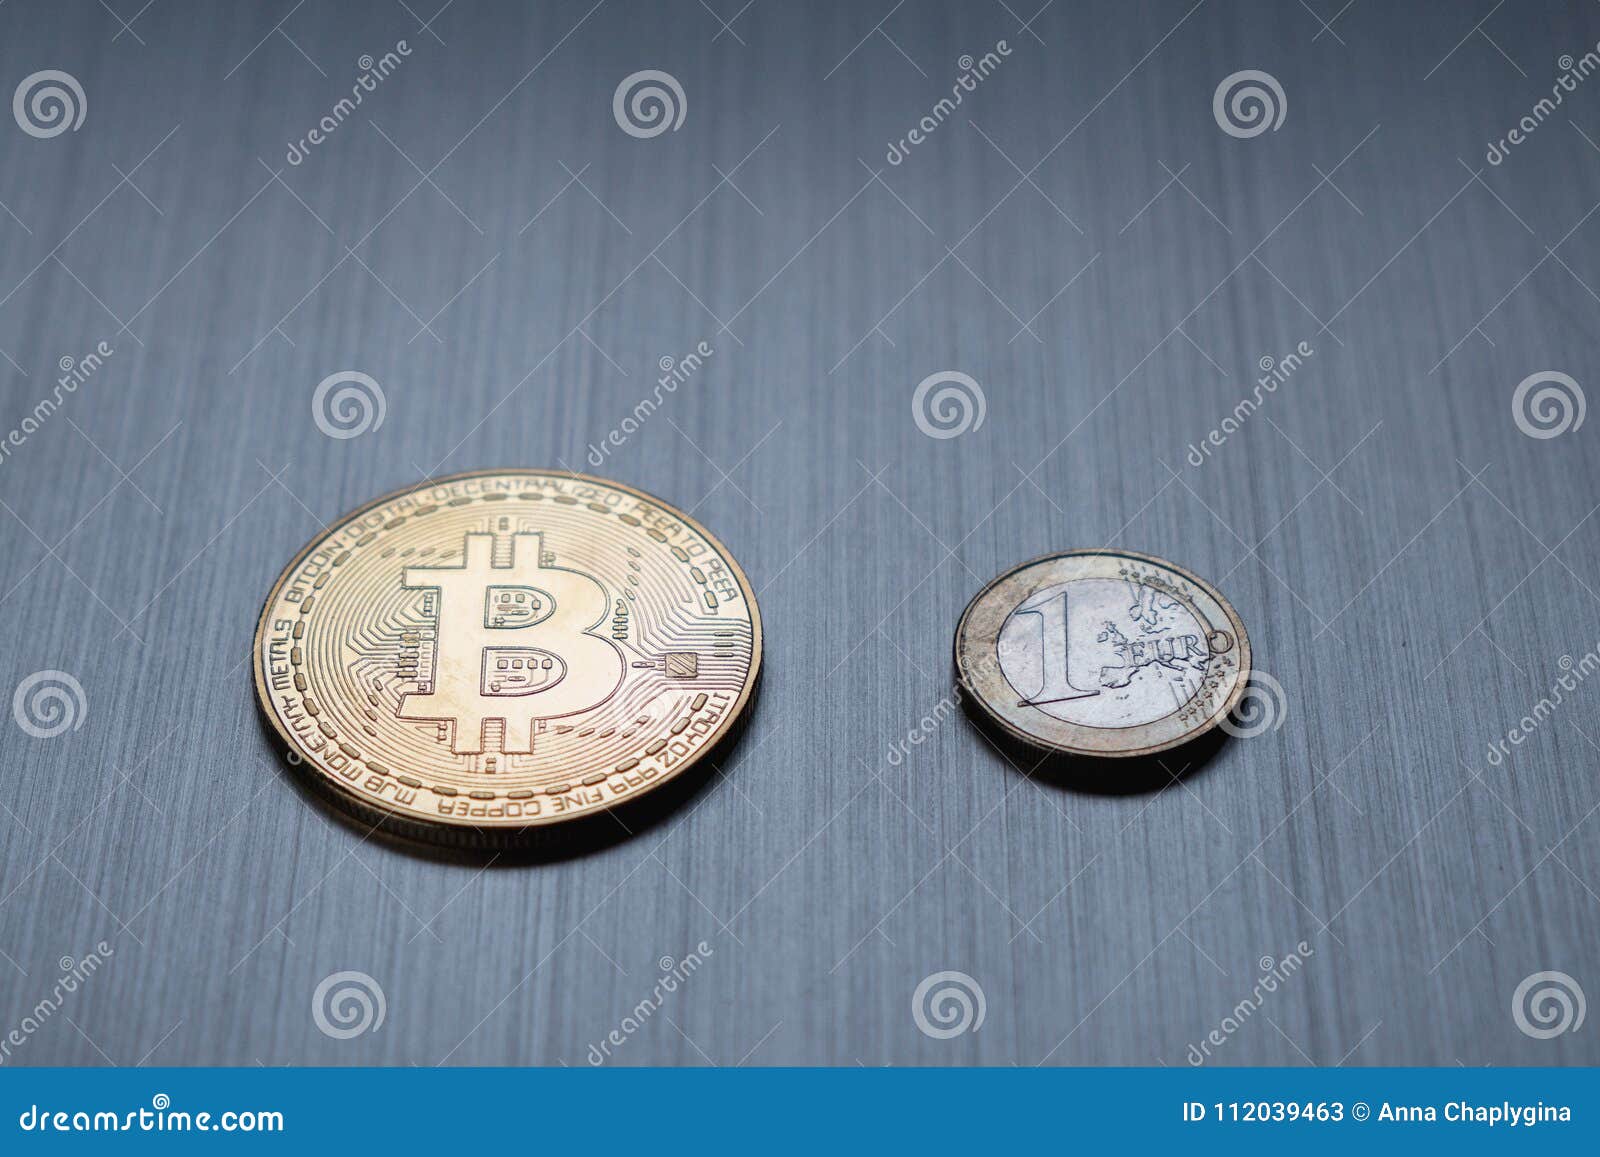 eurocoin crypto)